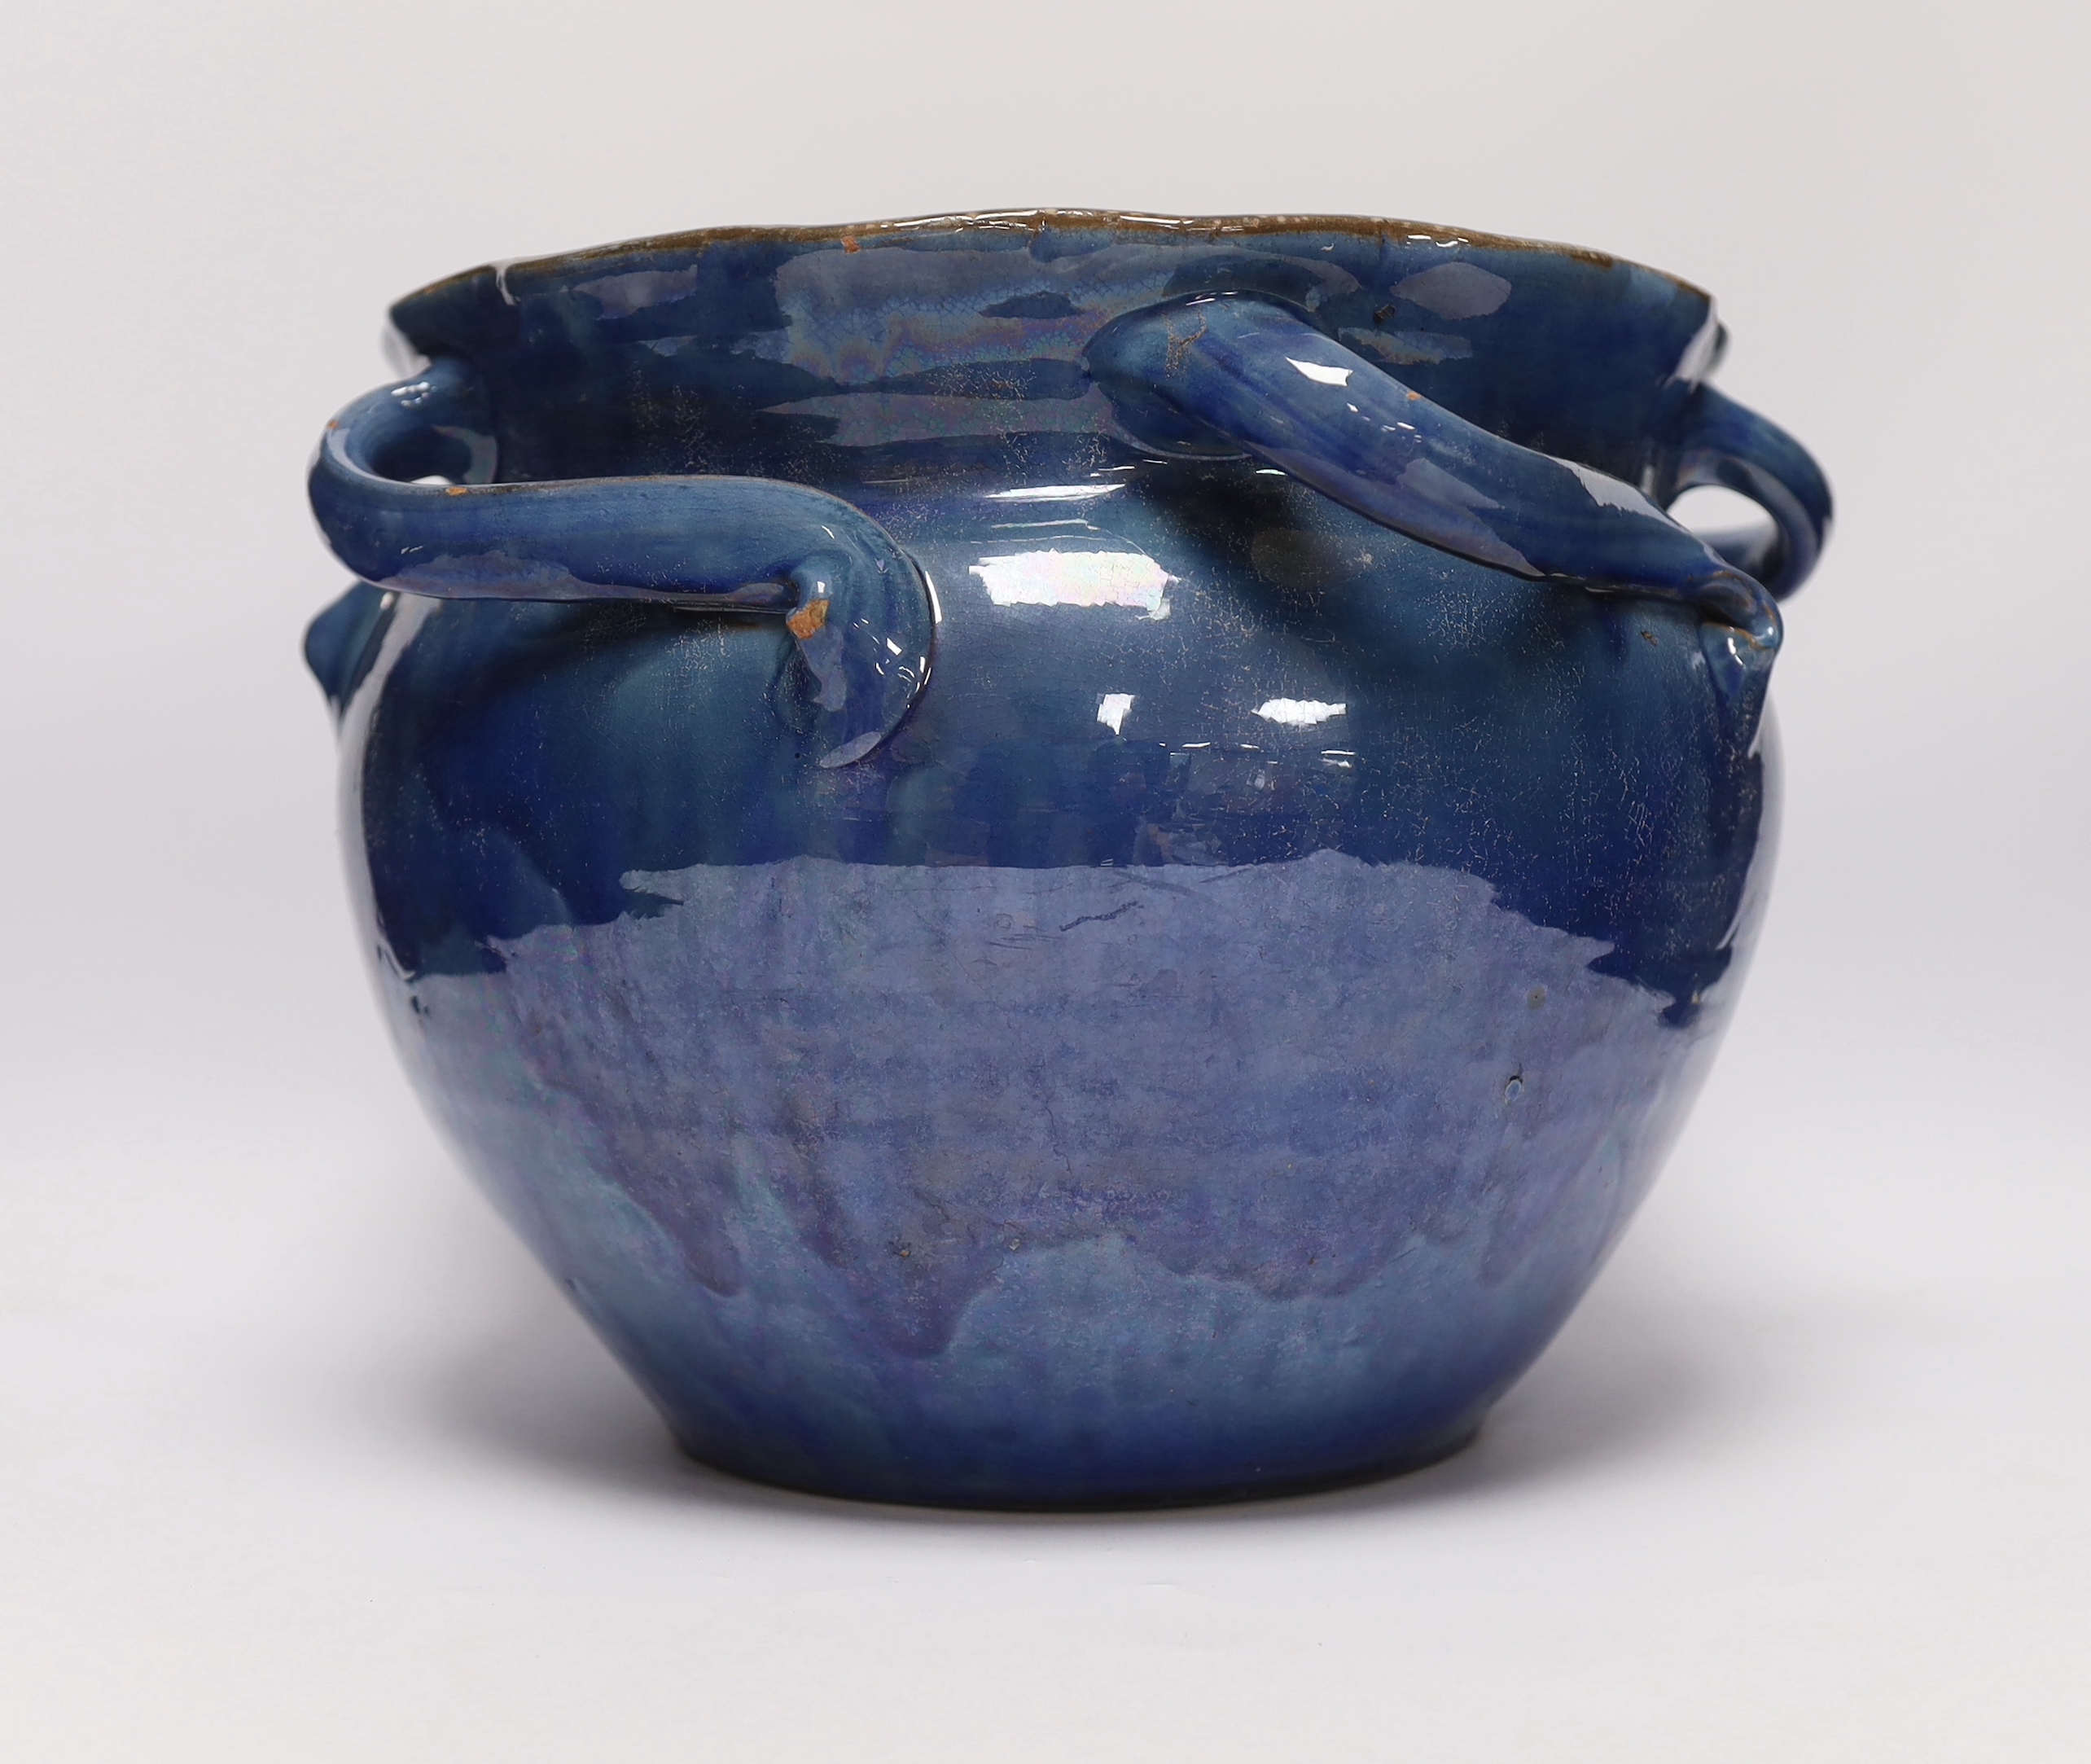 A C.H. Brannam Barum pottery jardinière, 25cm